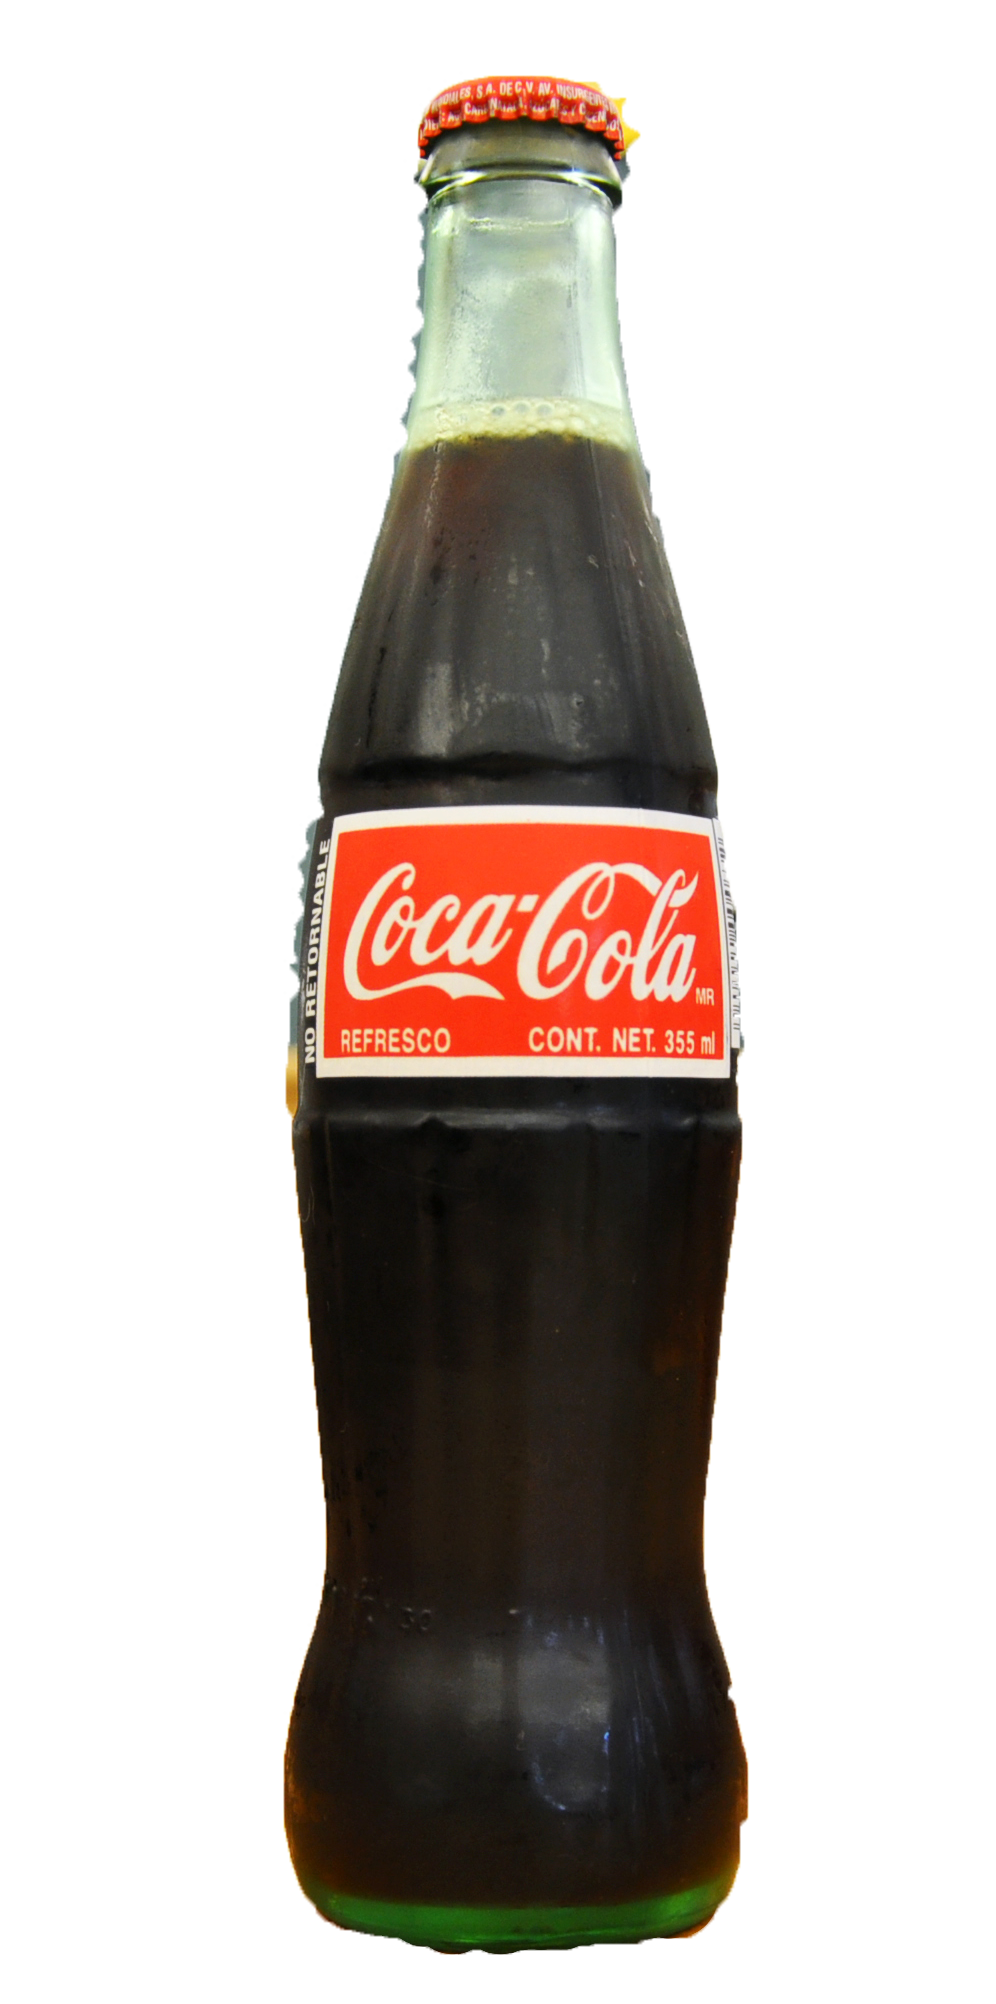 Coca-Cola Glass bottle - Coca